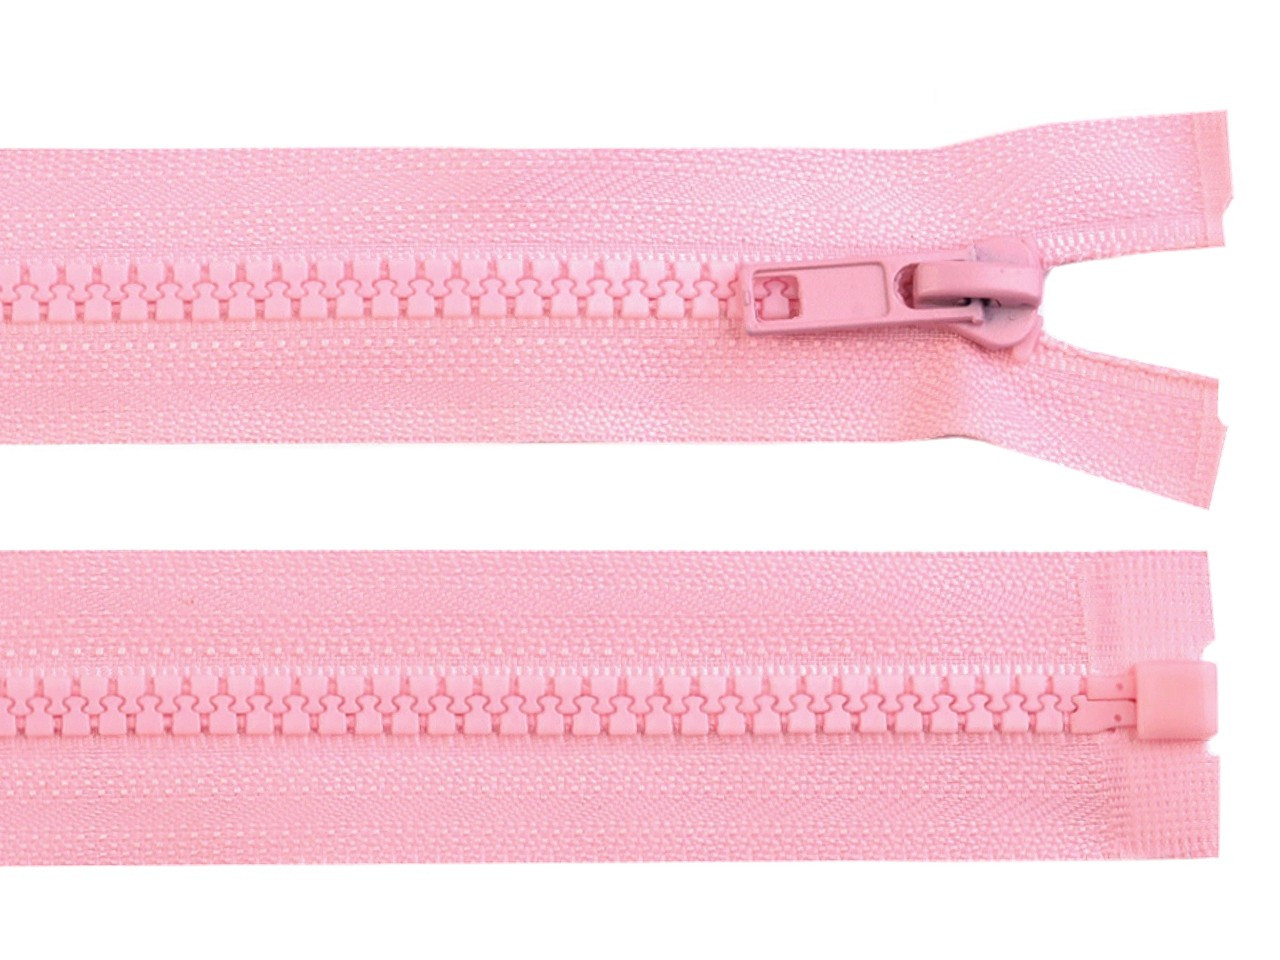 Kostěný zip No 5 délka 75 cm bundový, barva 134 růžová dětská světlá